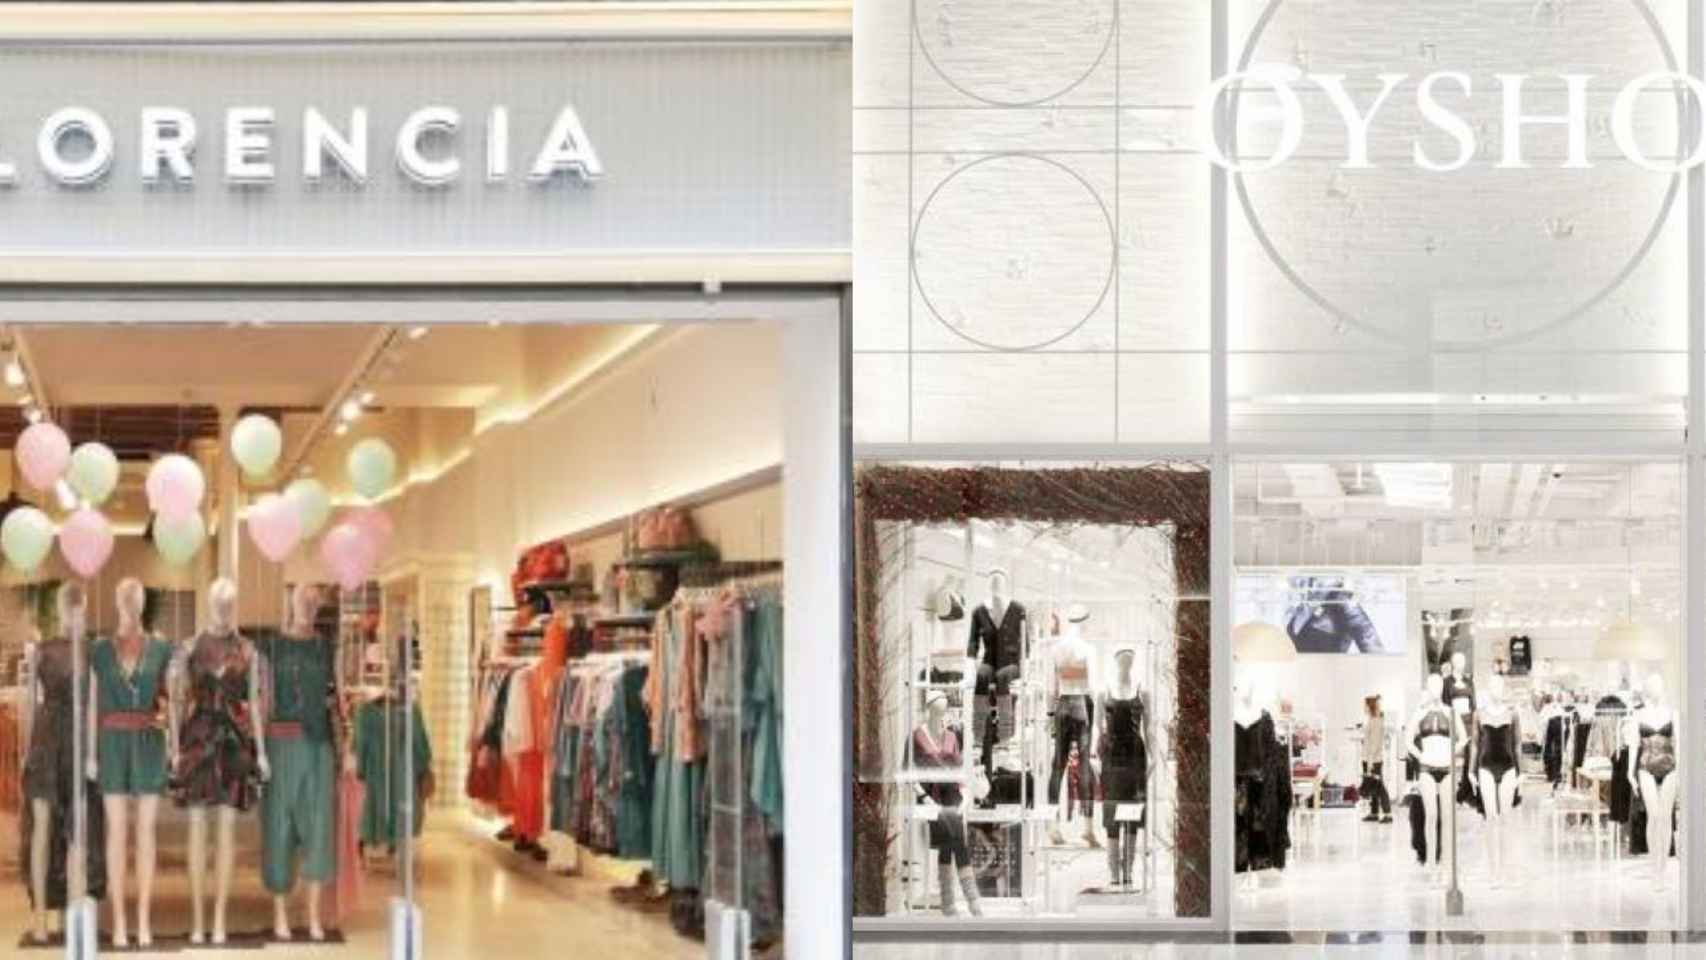 Florencia, la nueva tienda que releva un local de Inditex / ARCHIVO